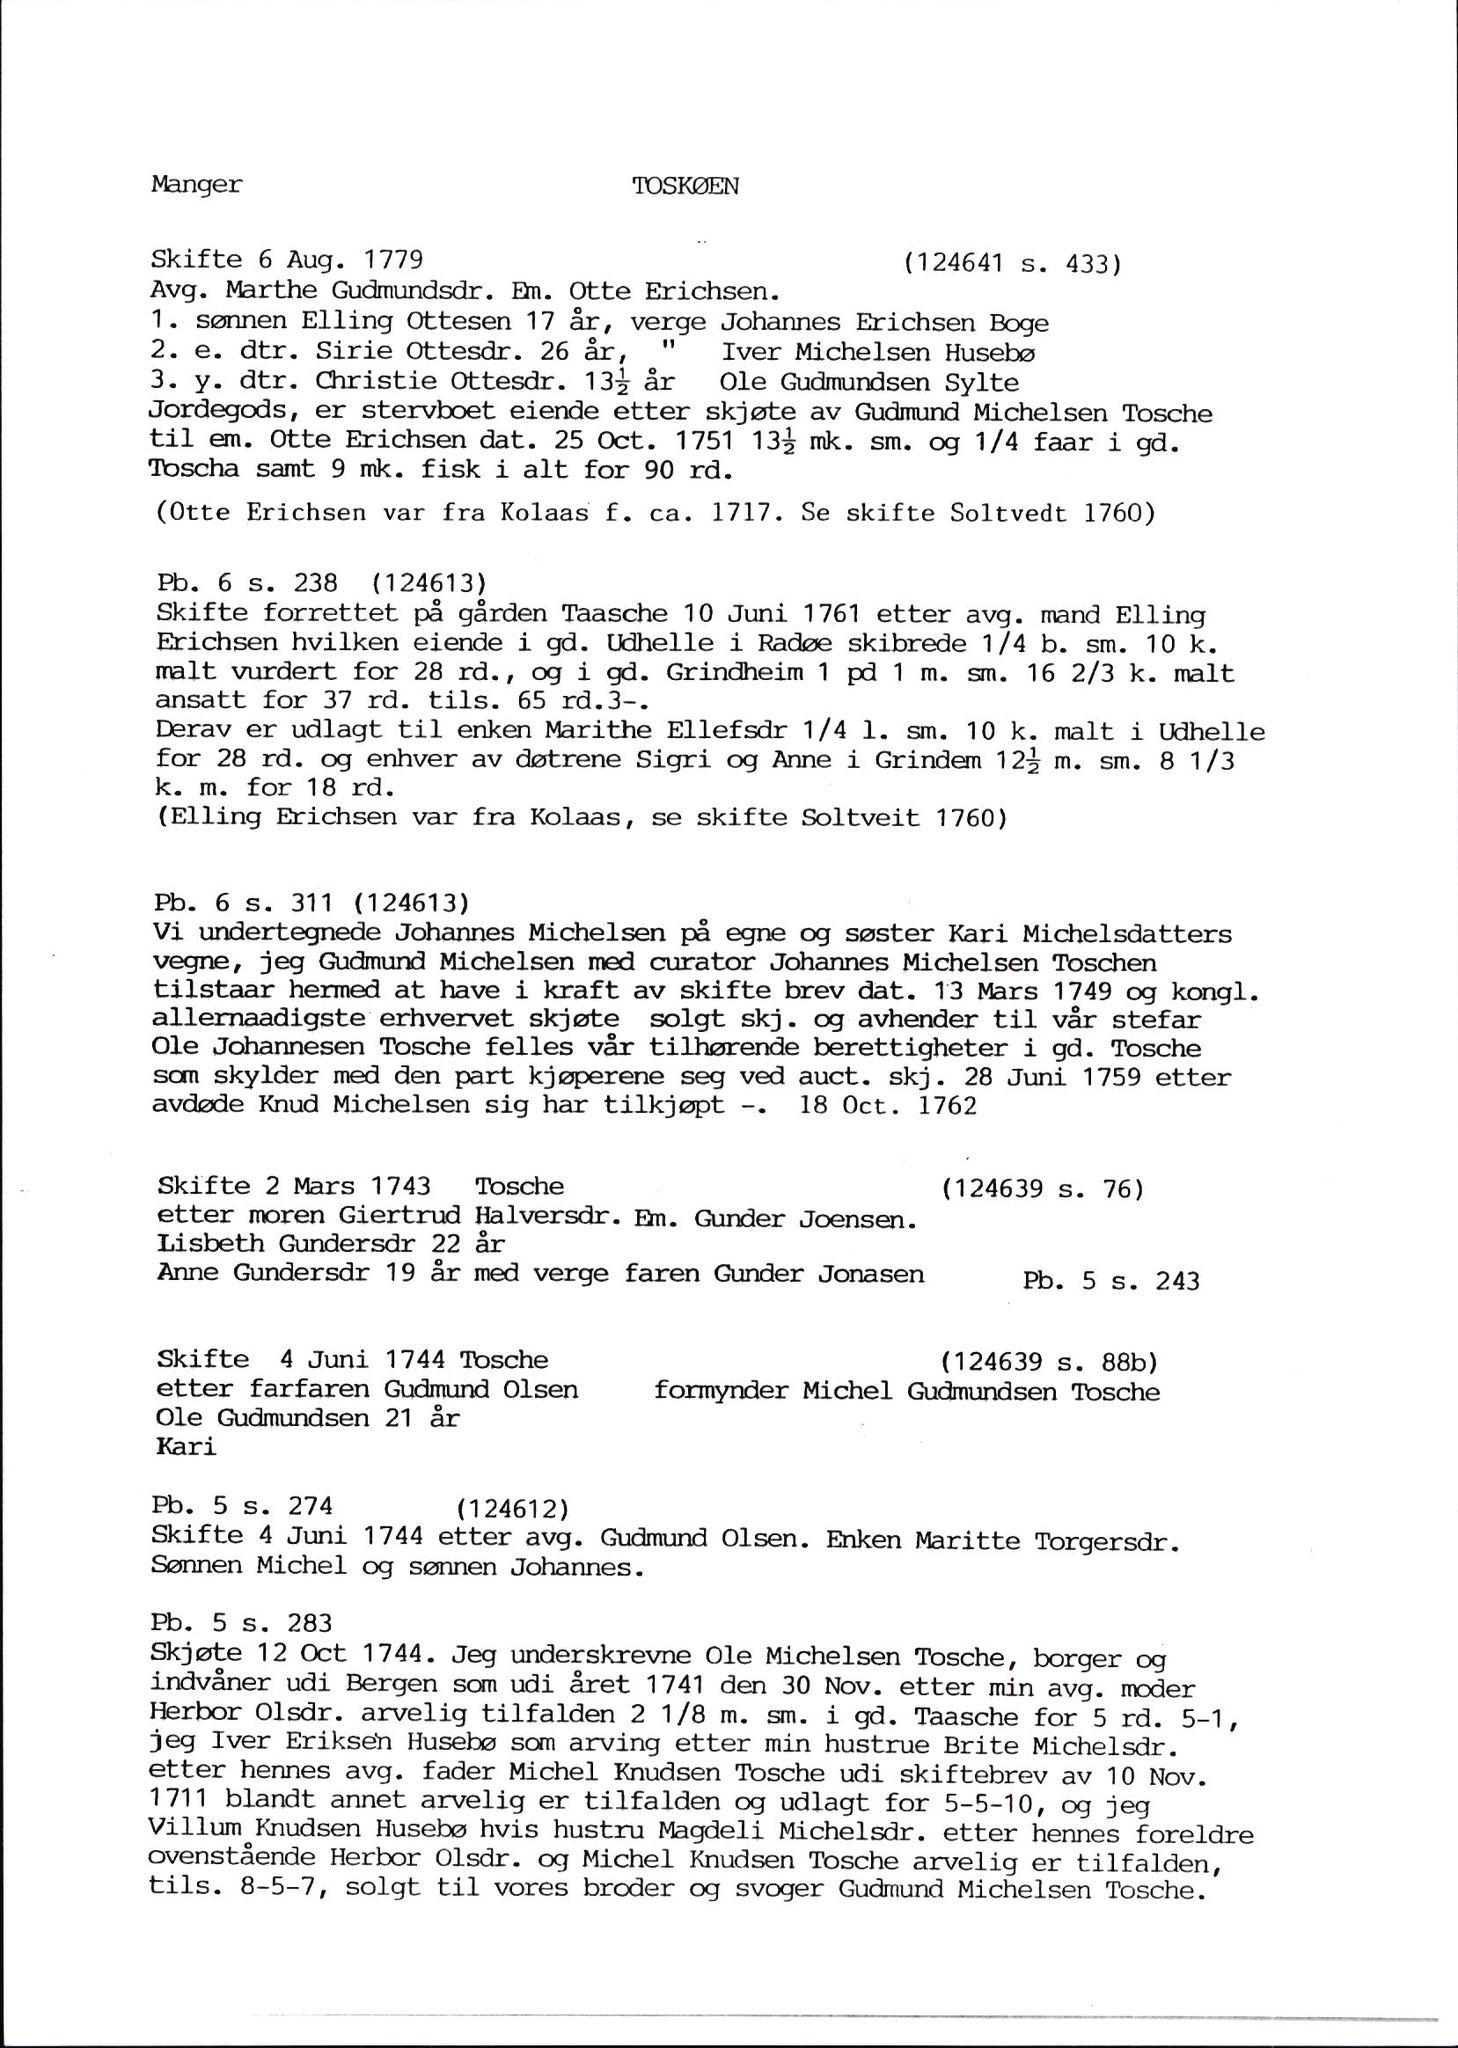 Samling av fulltekstavskrifter, SAB/FULLTEKST/D/12/0001: Skifter og andre opplysninger fra gårder i Manger prestegjeld (soknene Herdla, Bø, Sæbø og Manger) ca. 1700 - ca. 1800, 1700-1800, p. 53